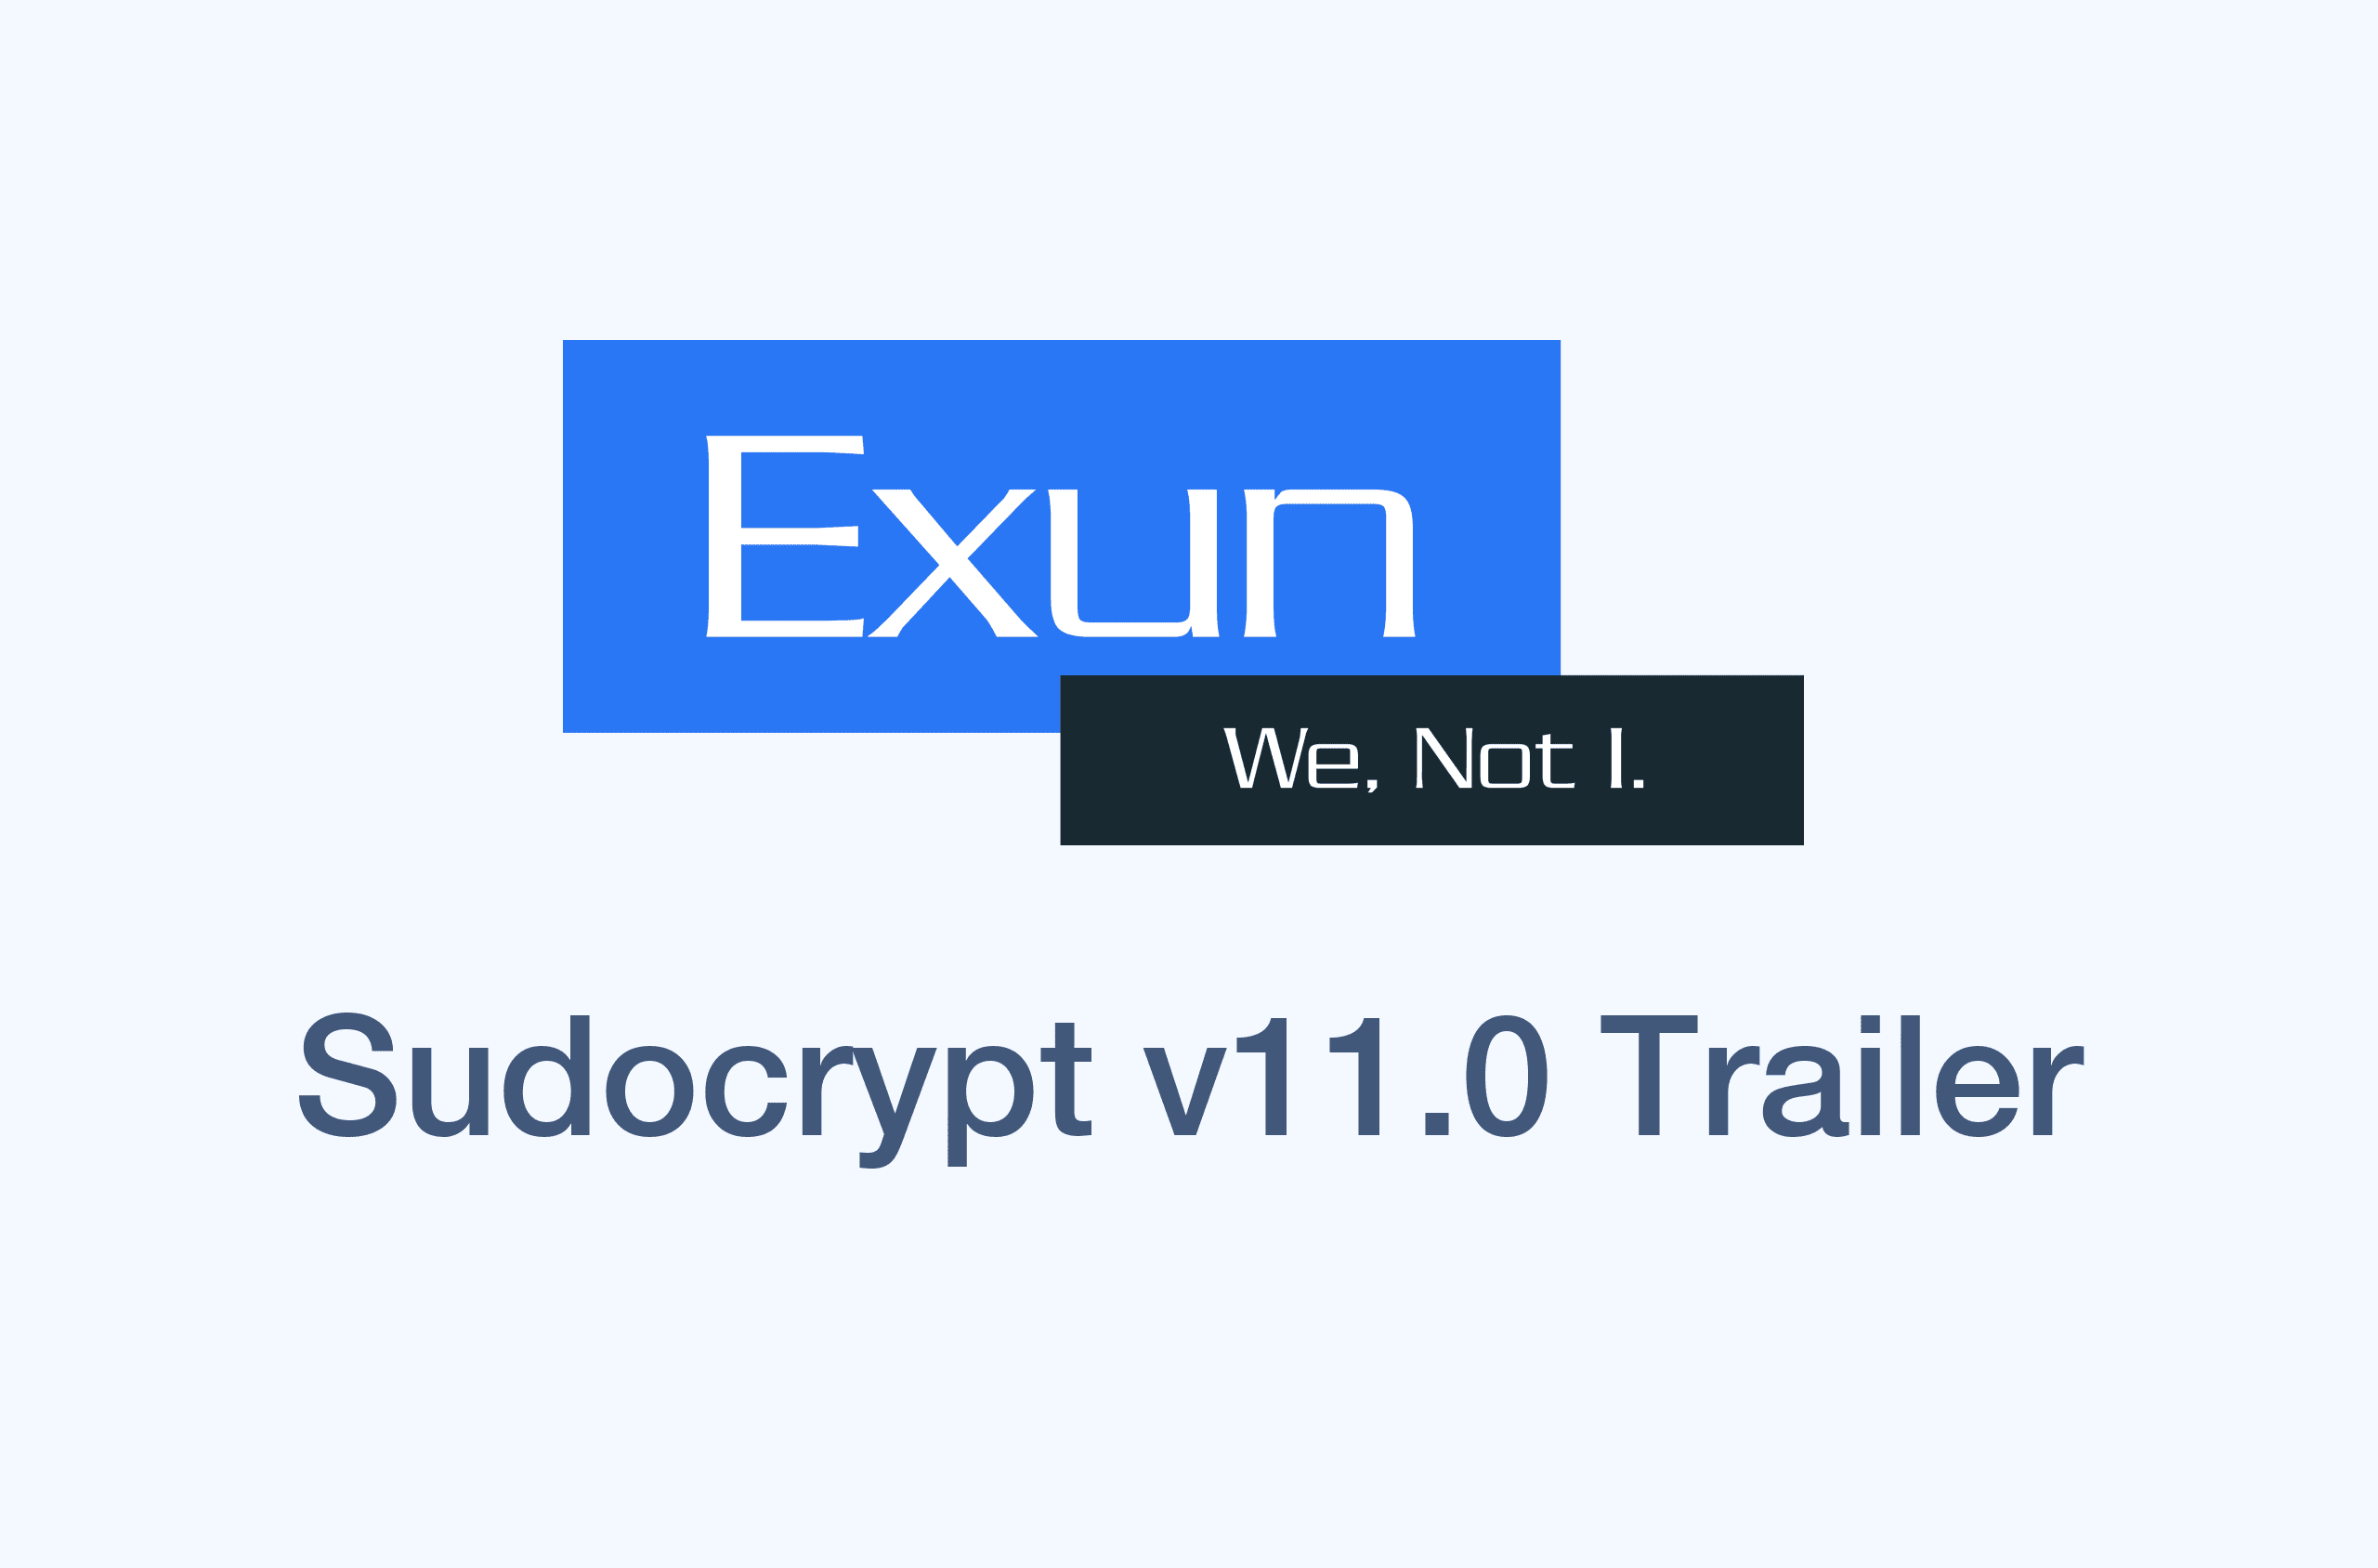 Sudocrypt v11.0 Trailer's image